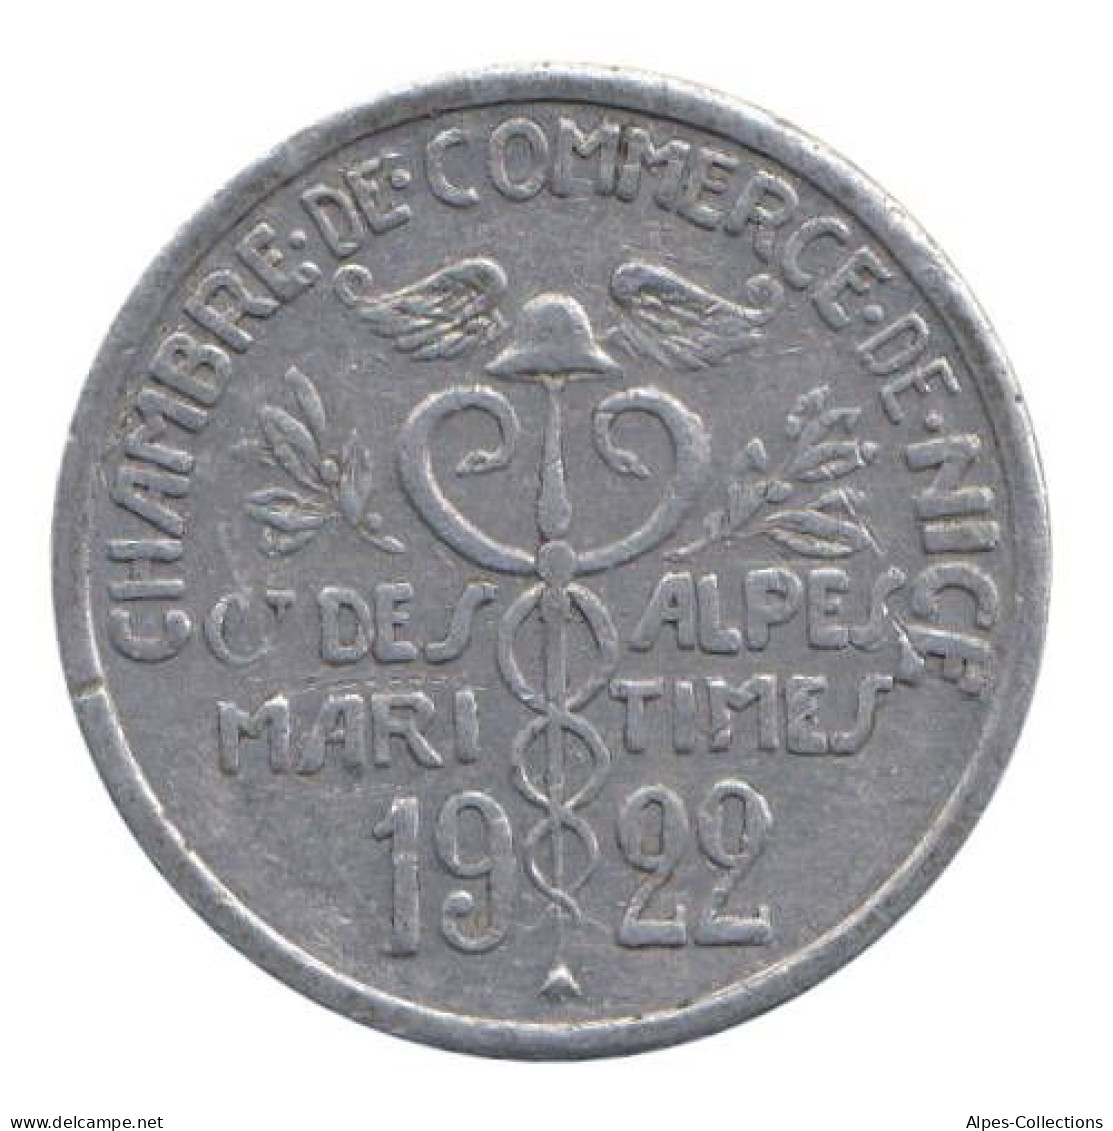 NICE - 01.03 - Monnaie De Nécessité - 5 Centimes 1922 - Notgeld